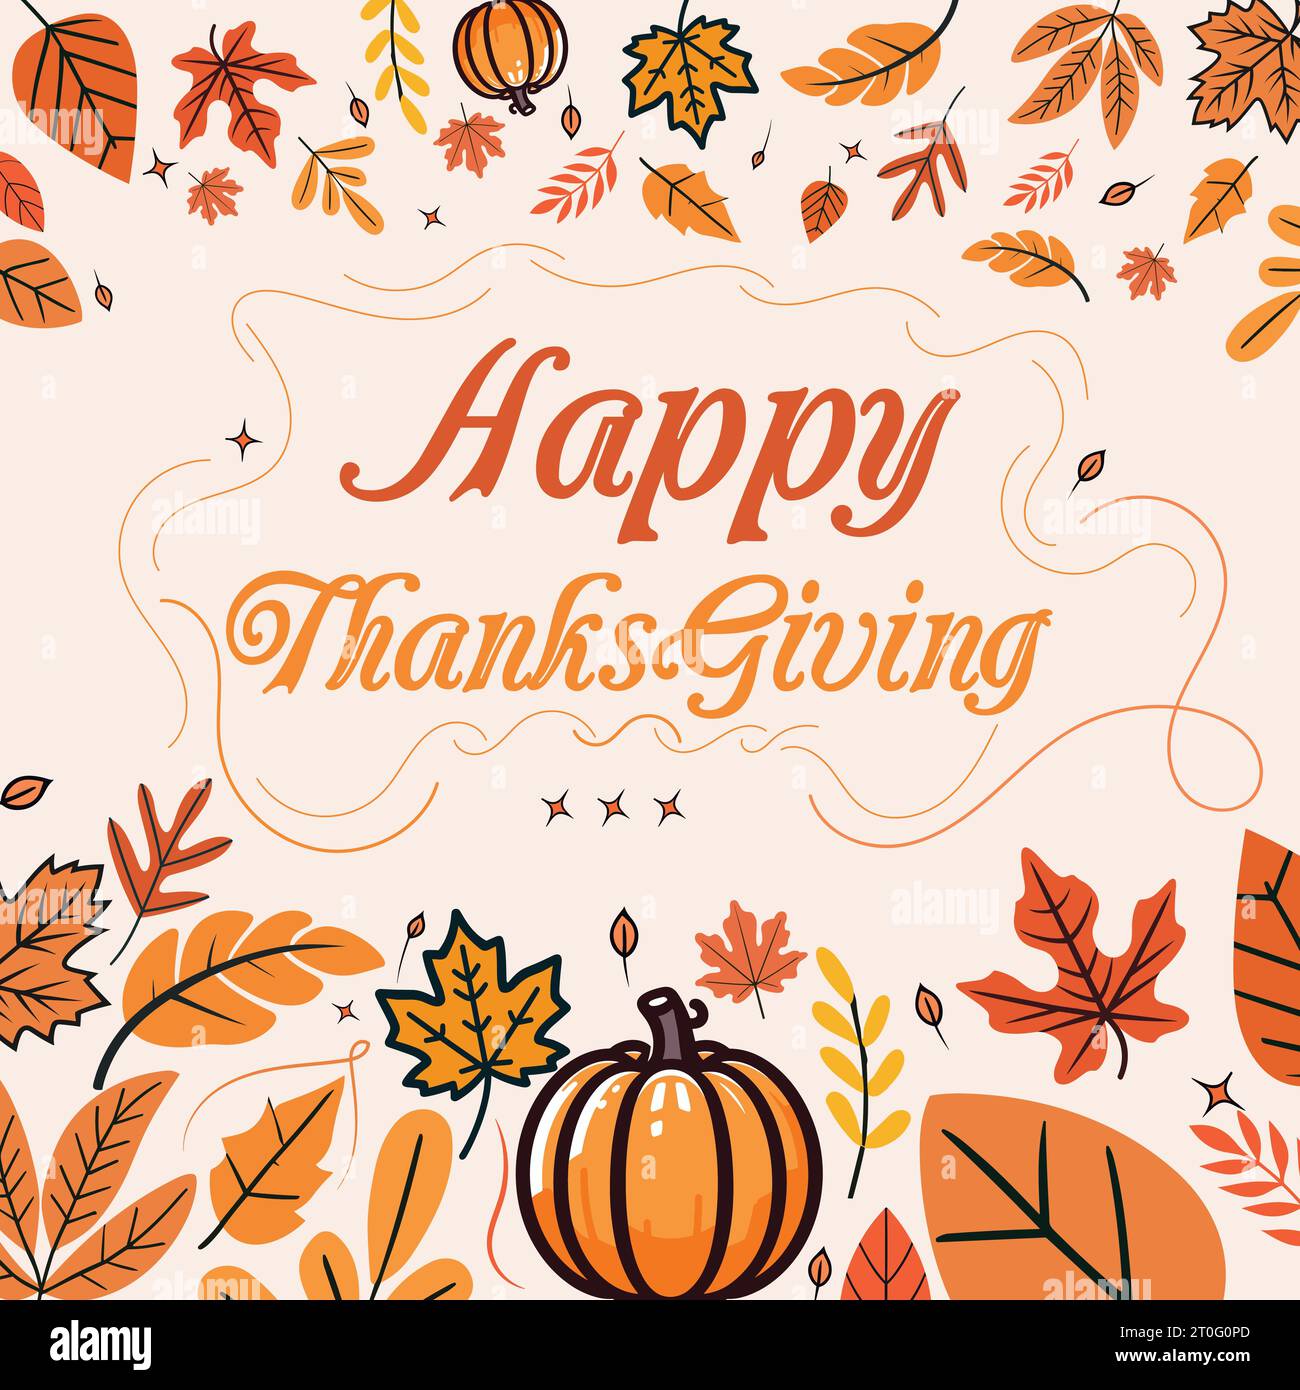 Happy Thanksgiving Vector Design Template for Autumn Season Stock Vector